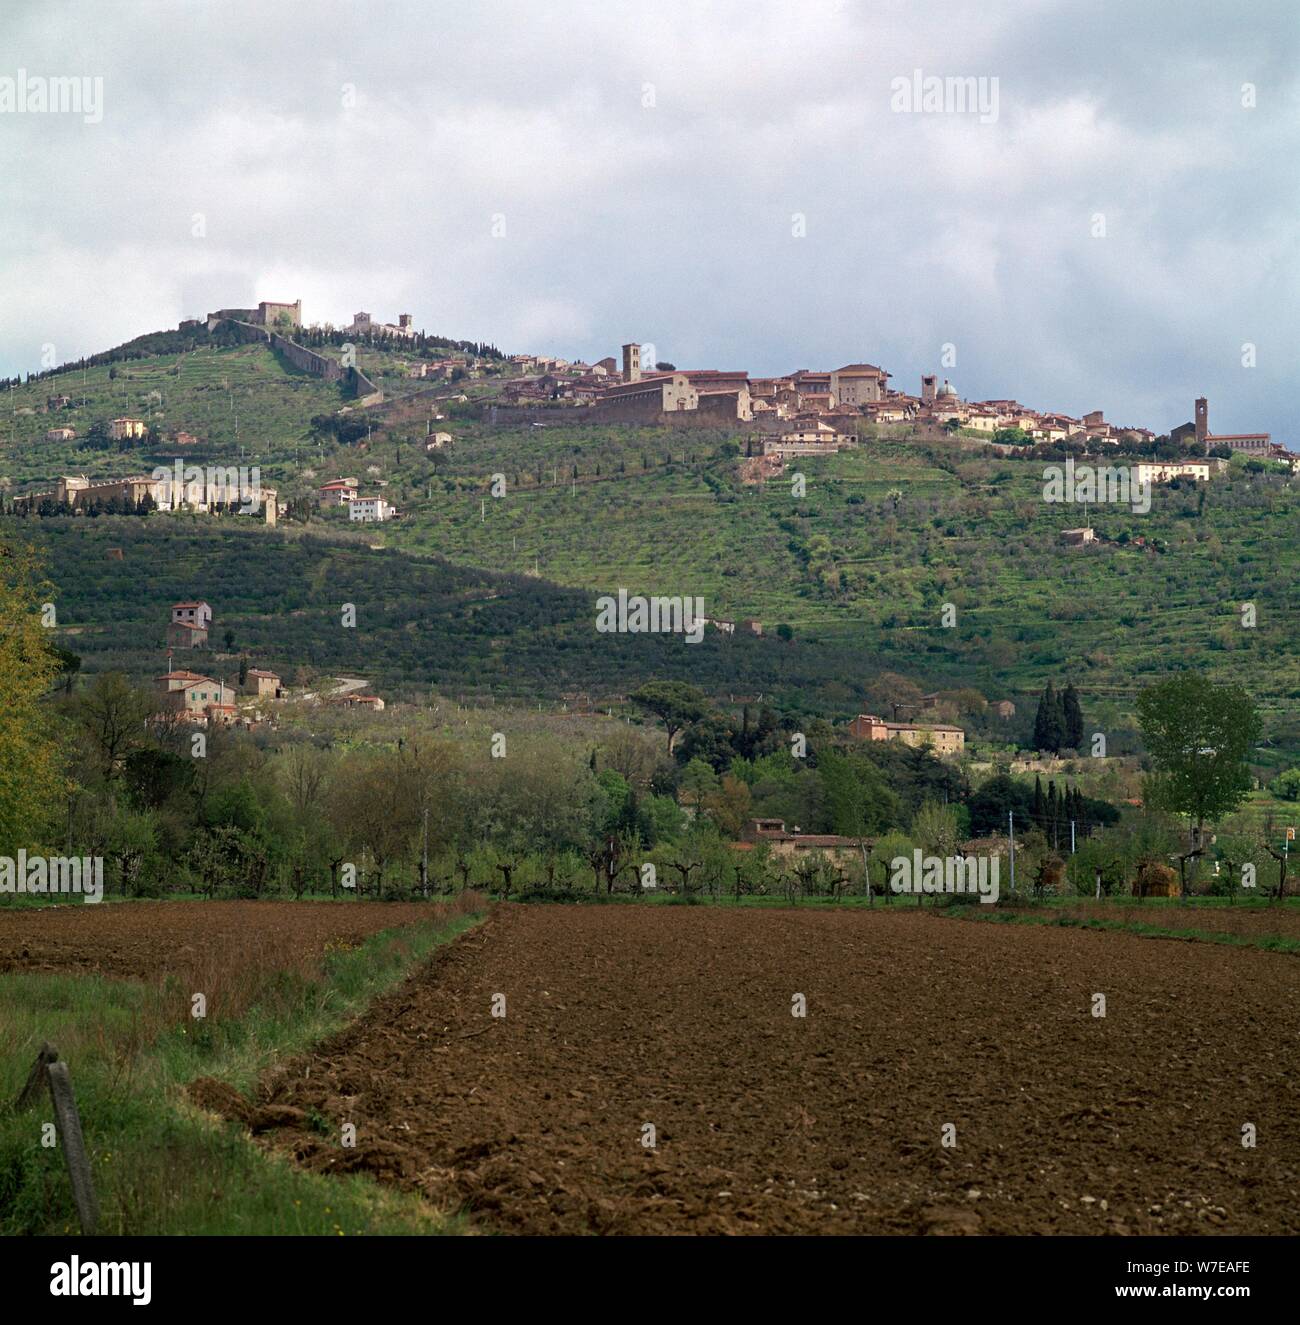 La ville de Cortona, une colline dans le centre de l'Italie. Artiste : Inconnu Banque D'Images